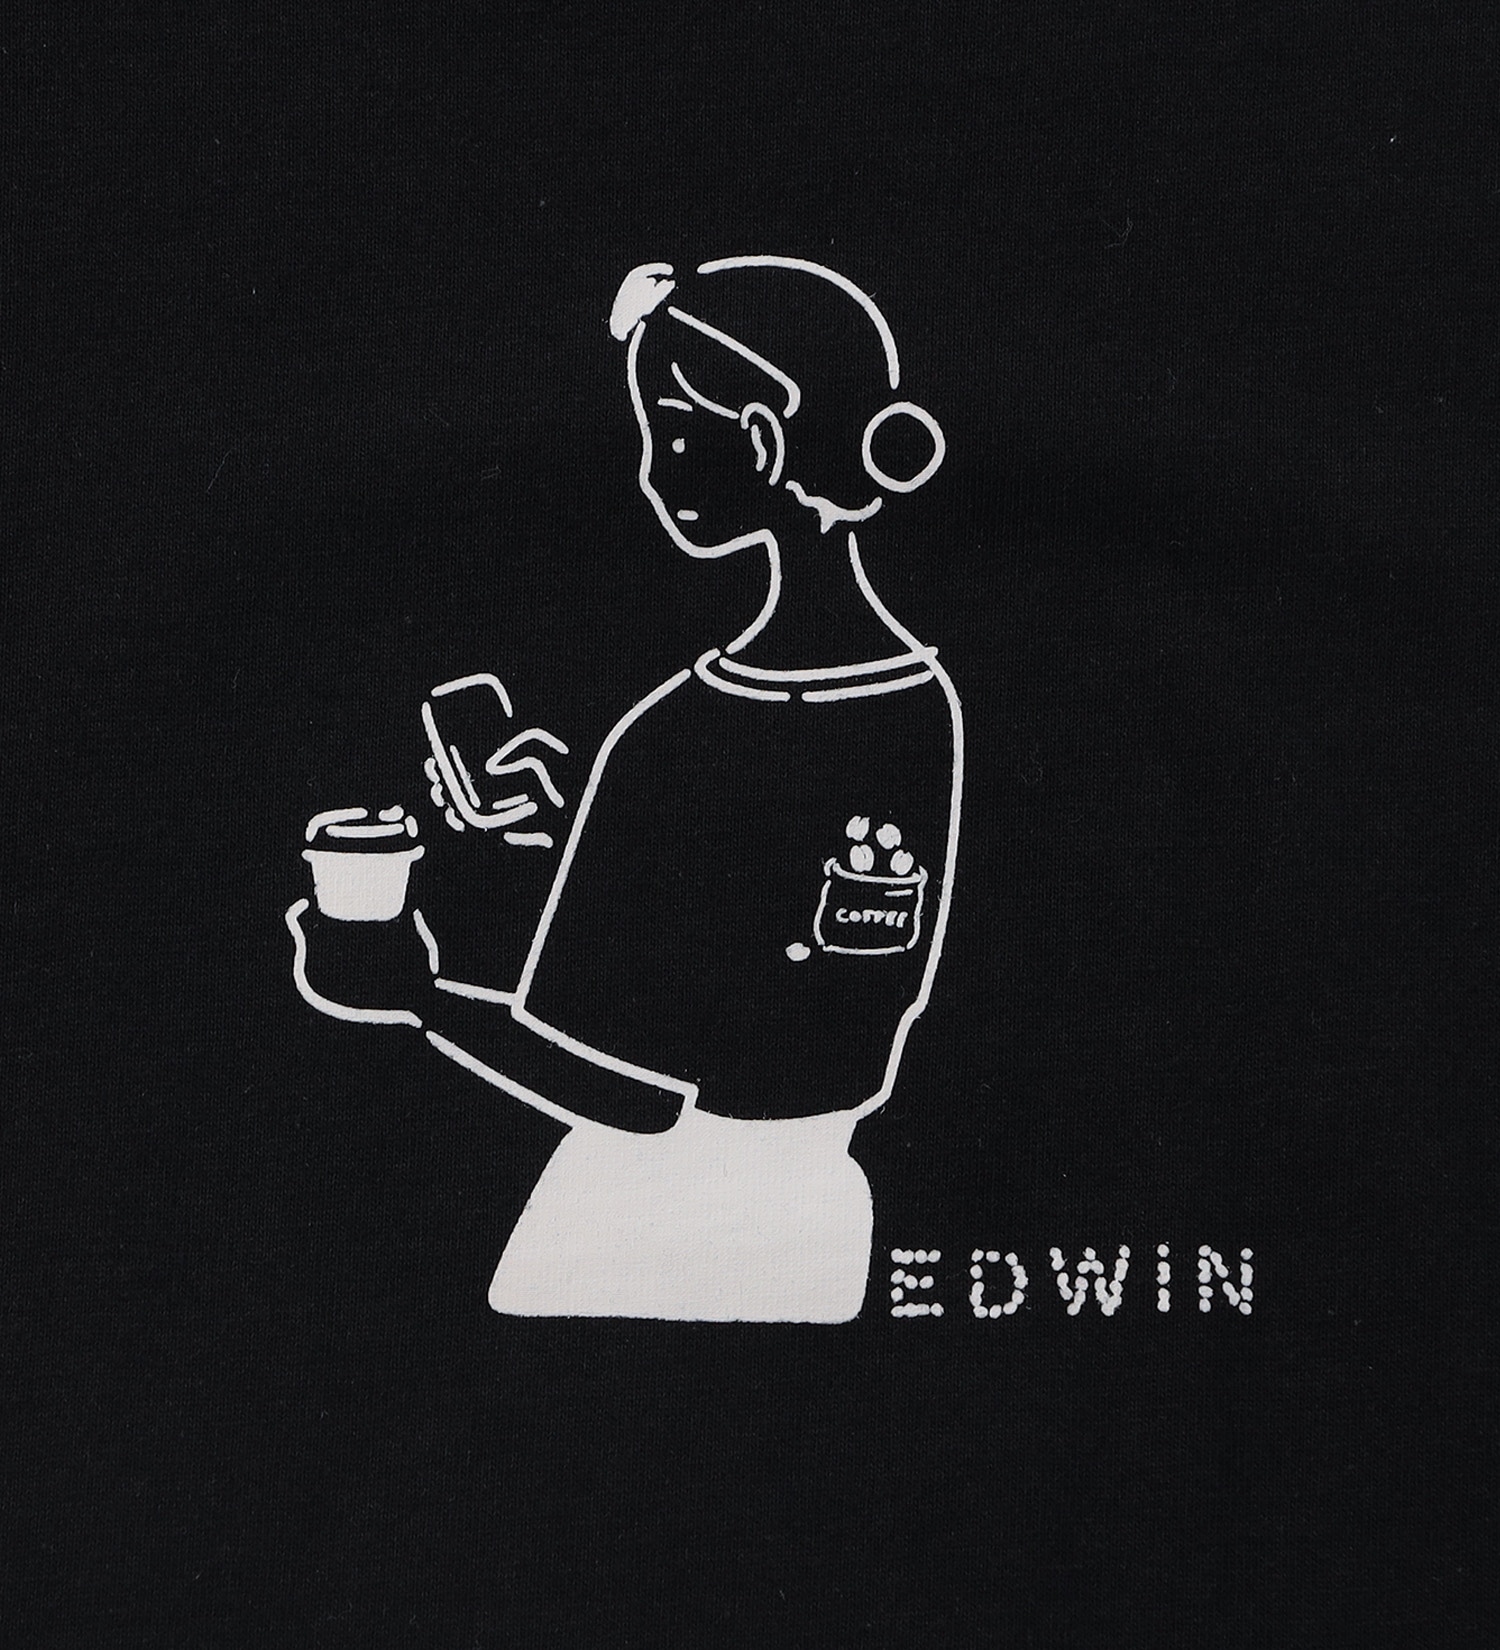 EDWIN(エドウイン)の【BLACKFRIDAY】手書き風プリントTシャツ 半袖（コーヒー）【アウトレット店舗・WEB限定】|トップス/Tシャツ/カットソー/レディース|ブラック